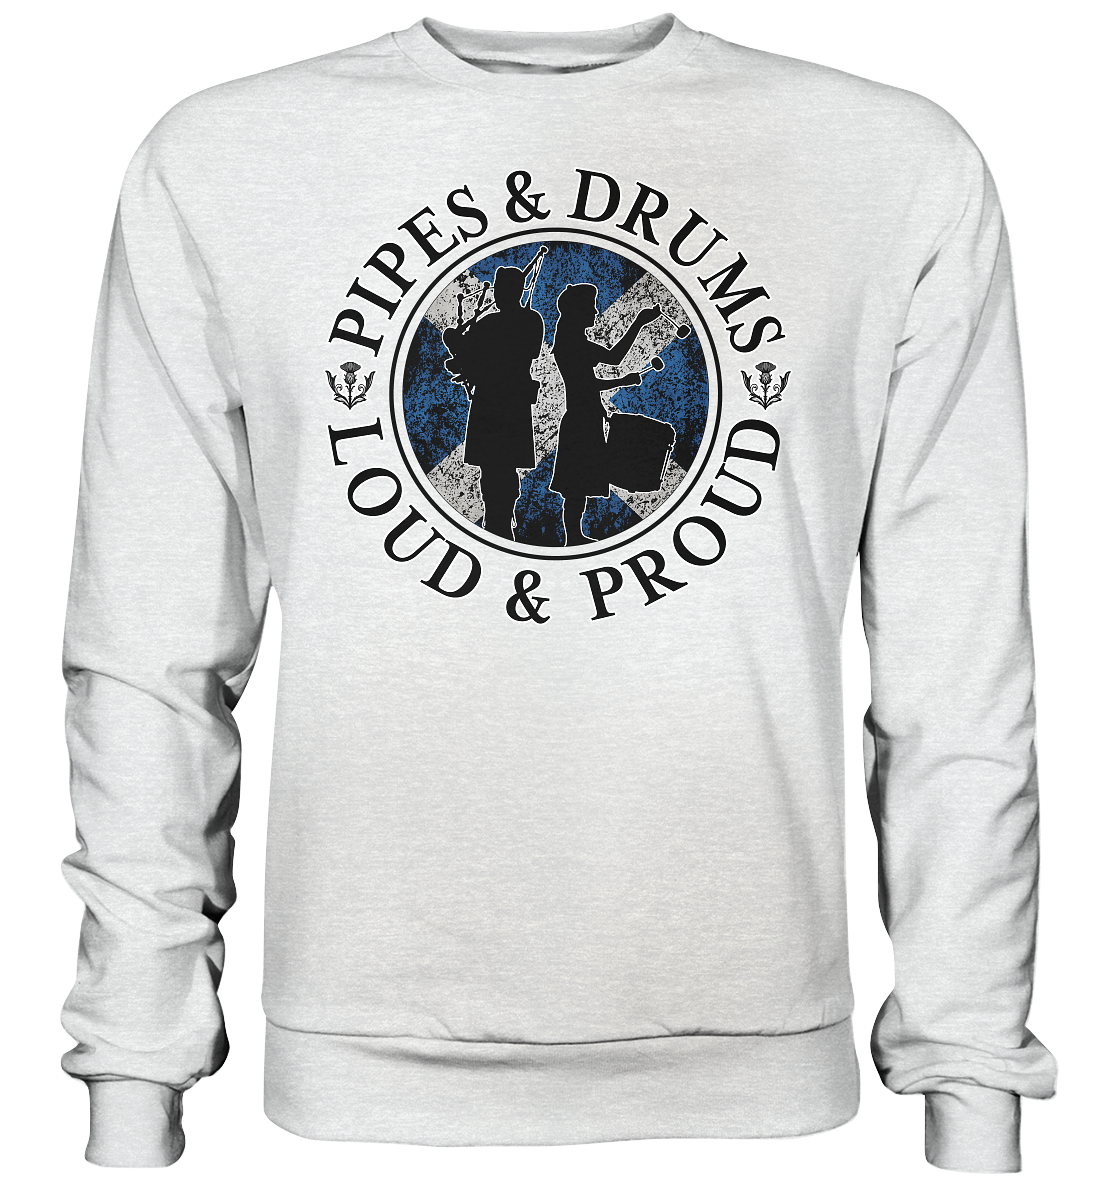 Pipes & Drums "Loud & Proud" - Premium Sweatshirt